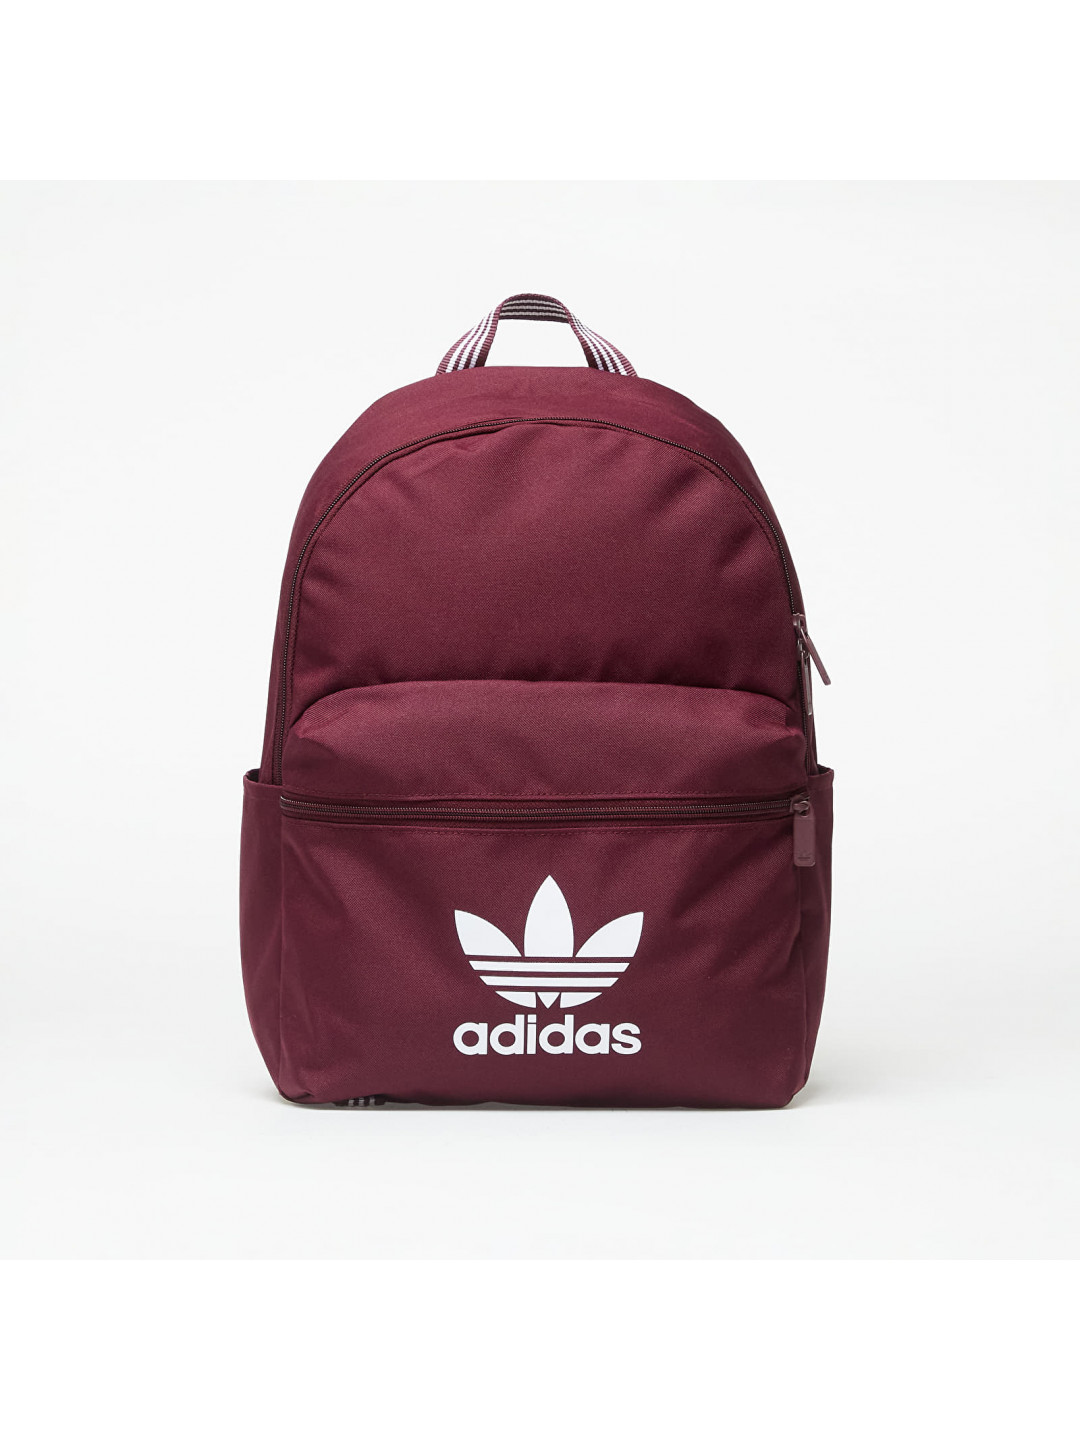 Adidas Originals Adicolor Backpack Maroon